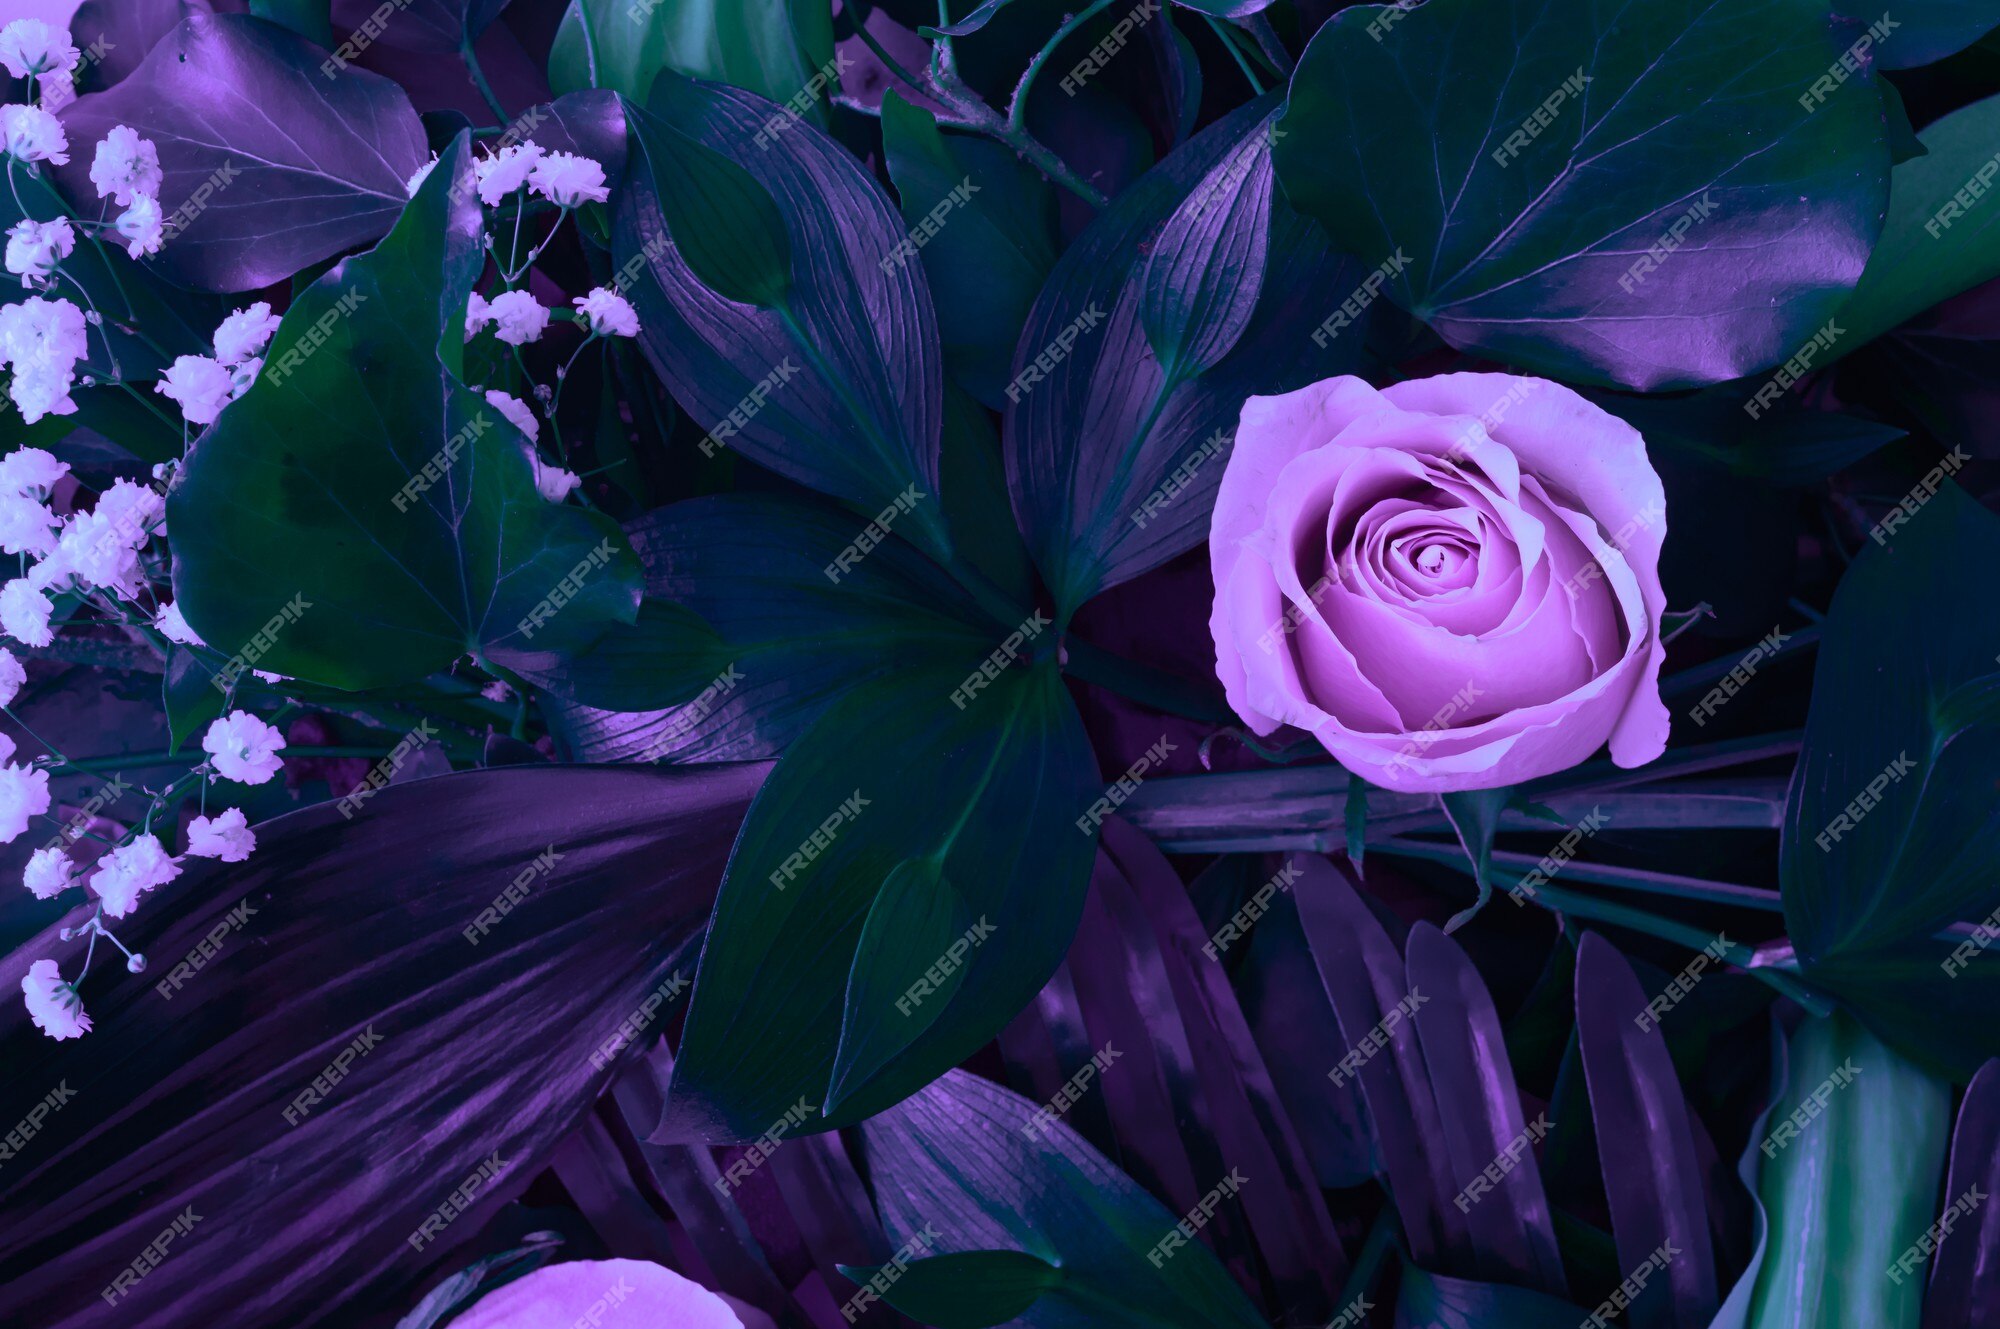 Hình nền lá màu tím - Màu tím đang trở thành xu hướng khiến bức hình thêm phần thu hút. Với hình nền lá màu tím, bạn sẽ cảm nhận được sự thanh lịch cùng với sự độc đáo của bức ảnh. Hãy cùng khám phá và khám phá thêm không gian hoàn toàn mới mẻ. Translation: Purple leaves background - Purple is becoming a trend that makes the picture more attractive. With a purple leaves background, you will feel the elegance and uniqueness of the picture. Let\'s explore and discover a completely new space.